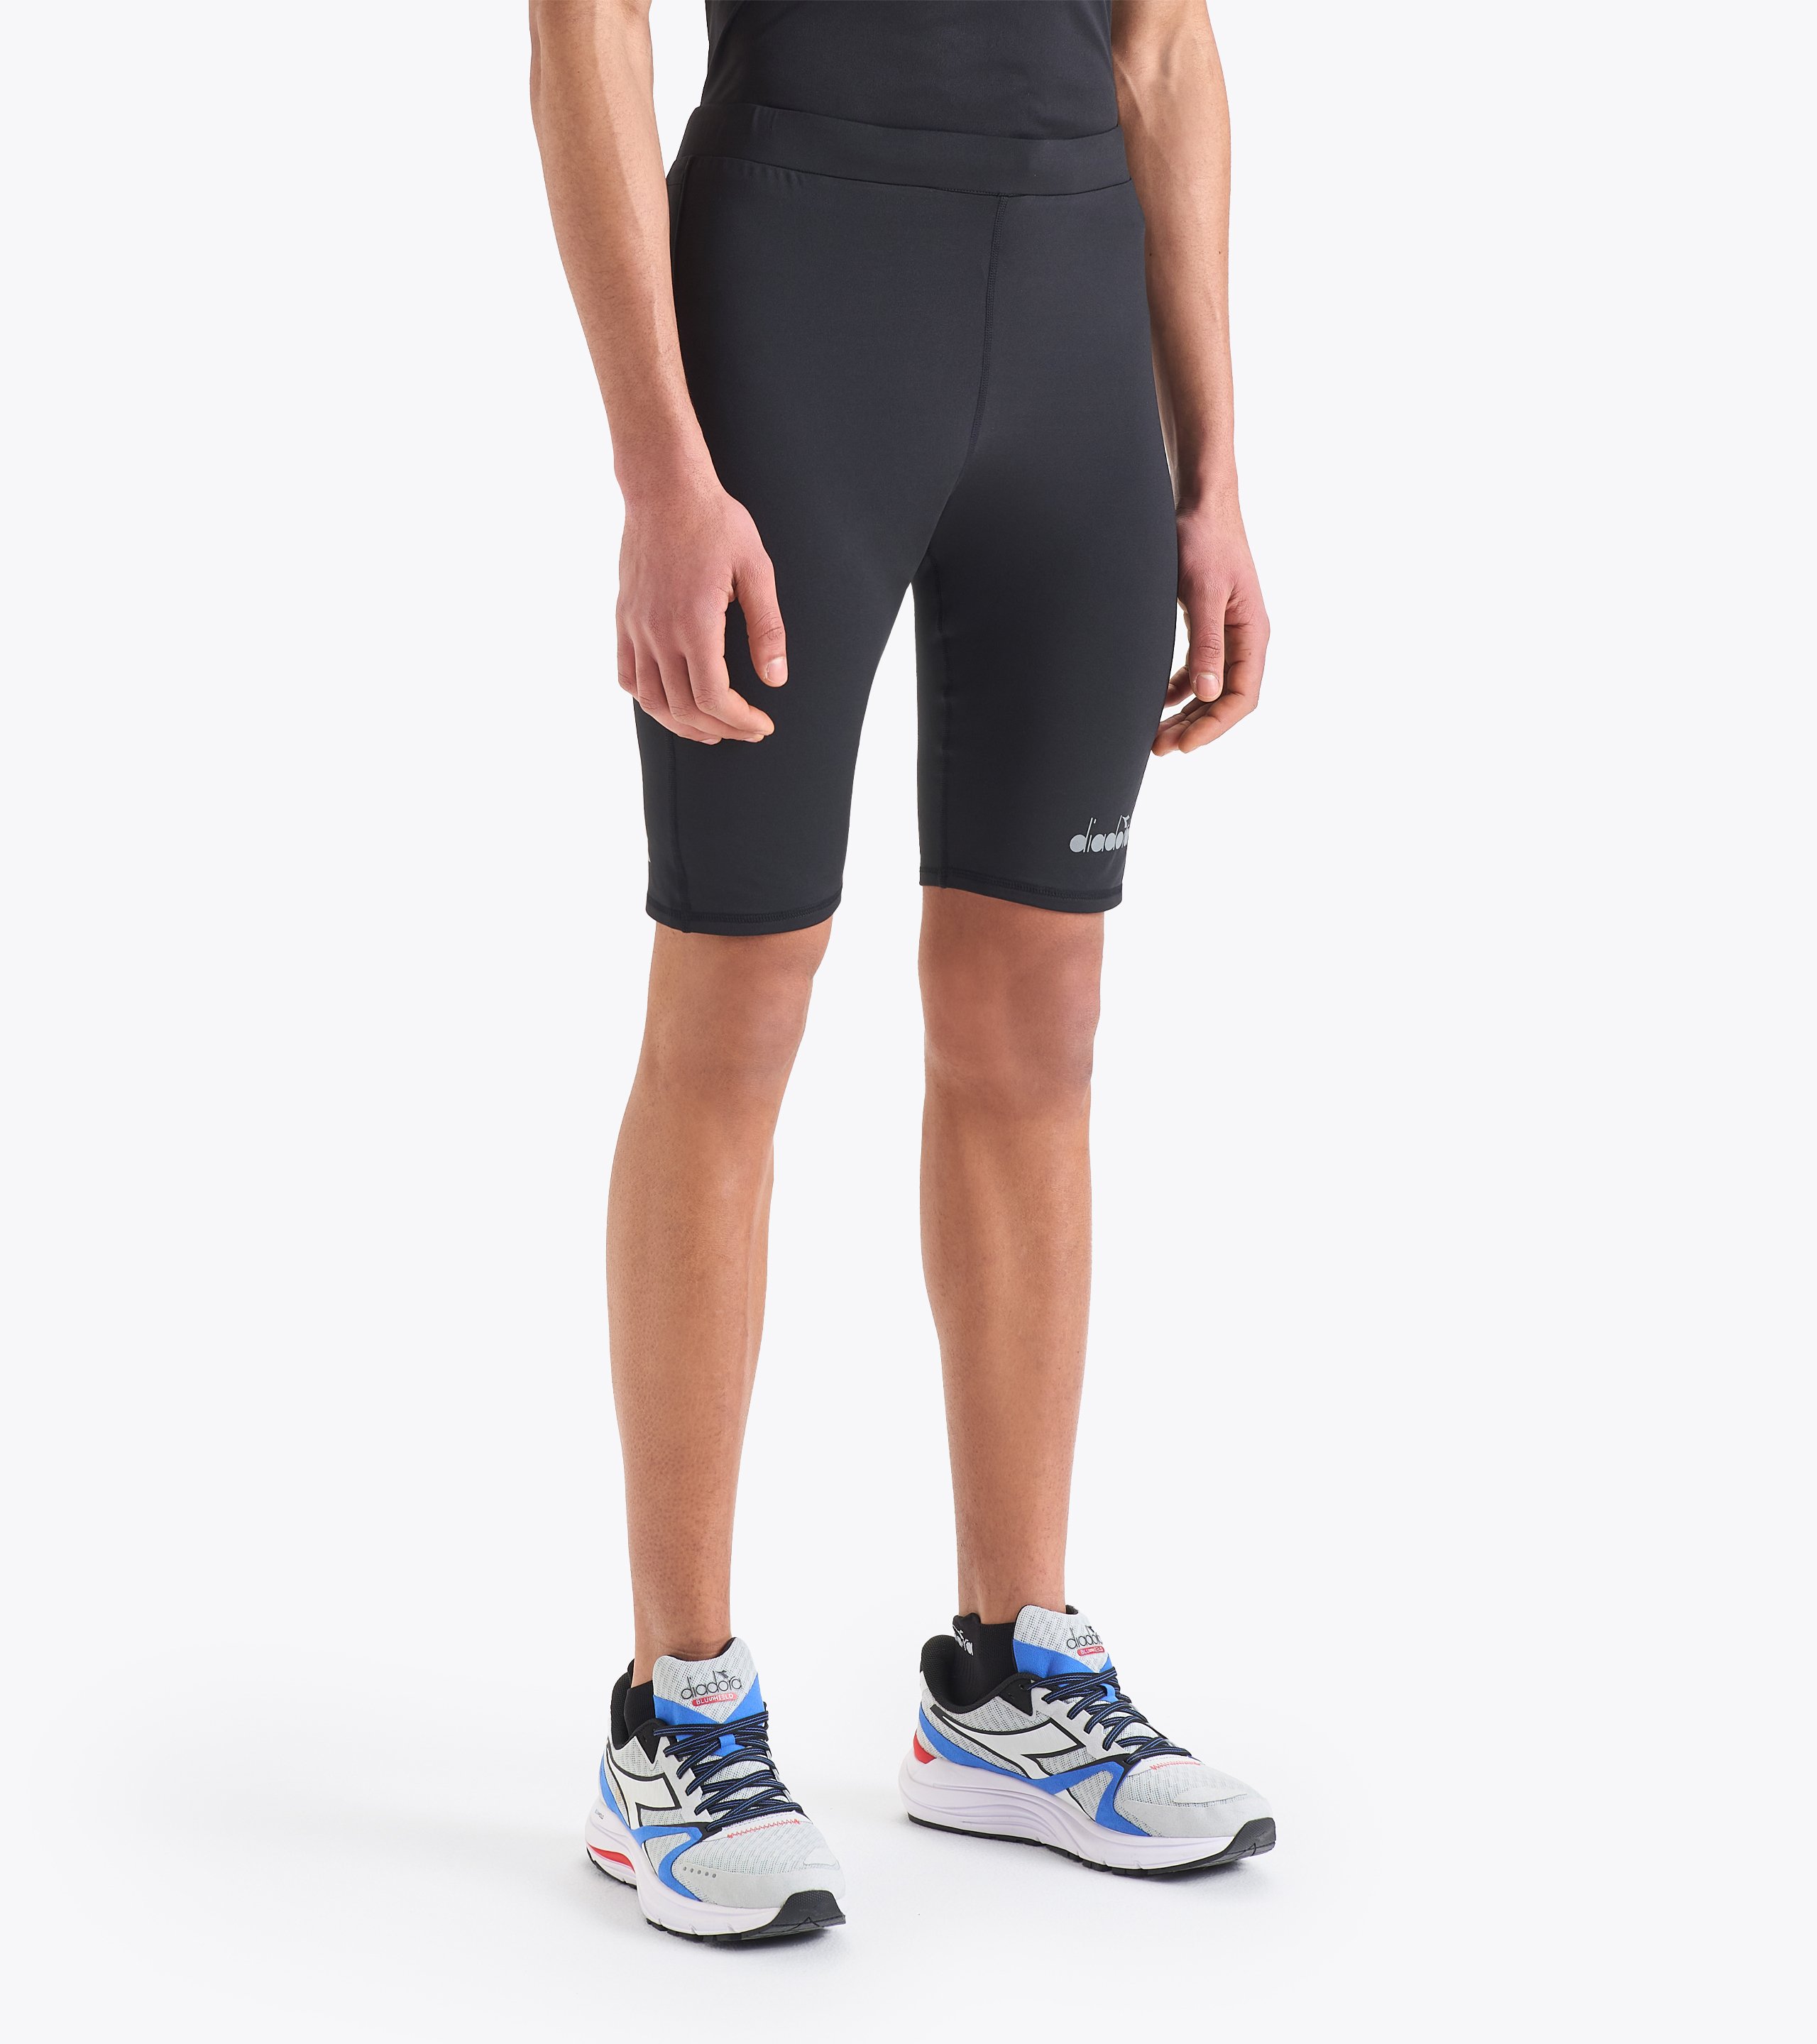 SHORT TIGHTS Running shorts - Men - Diadora Online Store DK